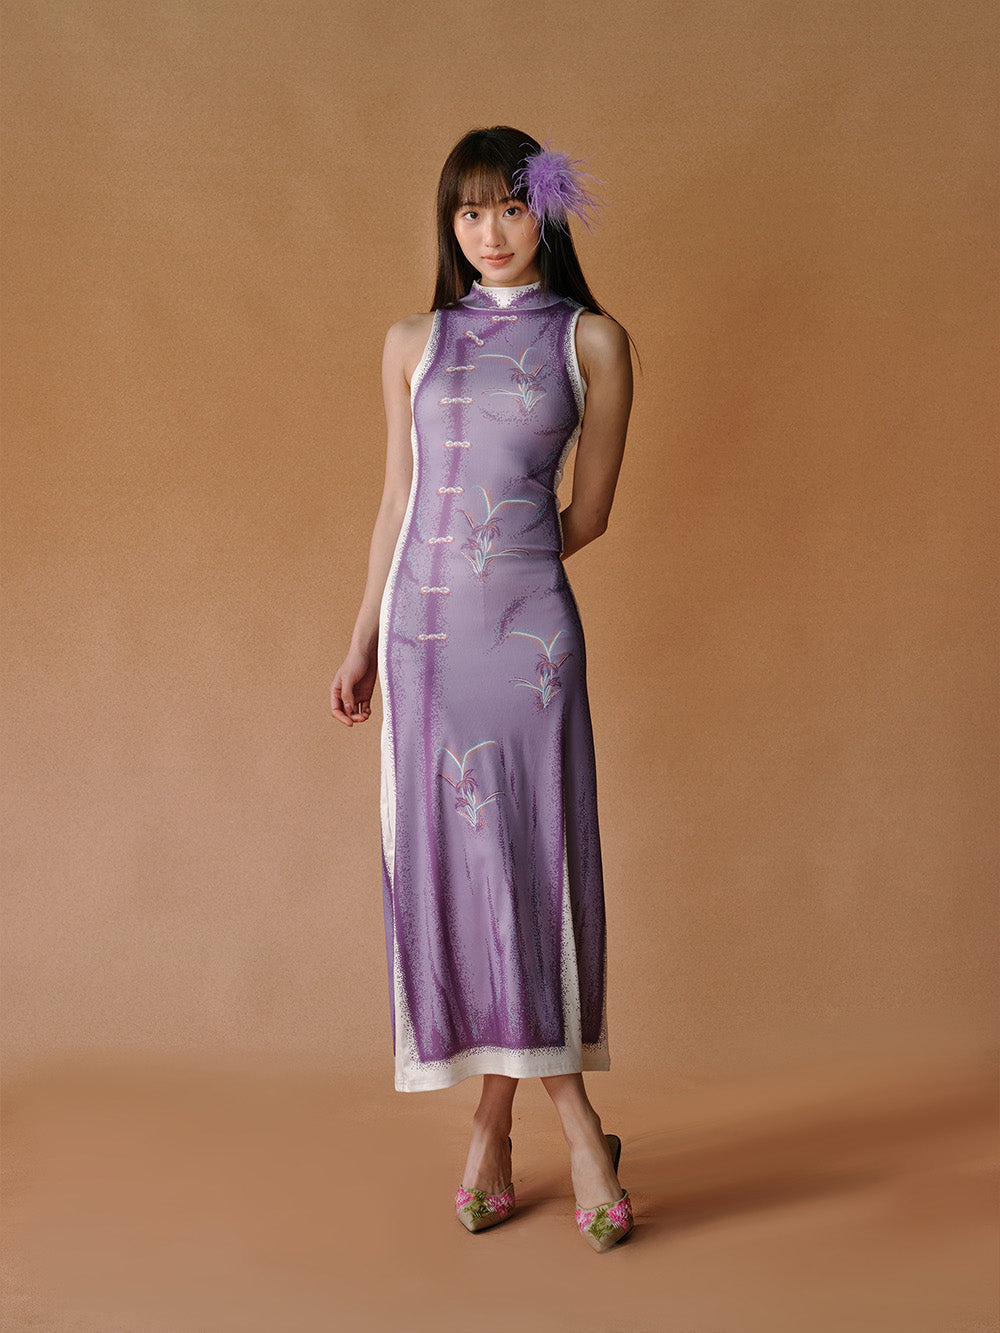 MUKTANK x LOUMUTAKU Neo-Chinese Purple Dress